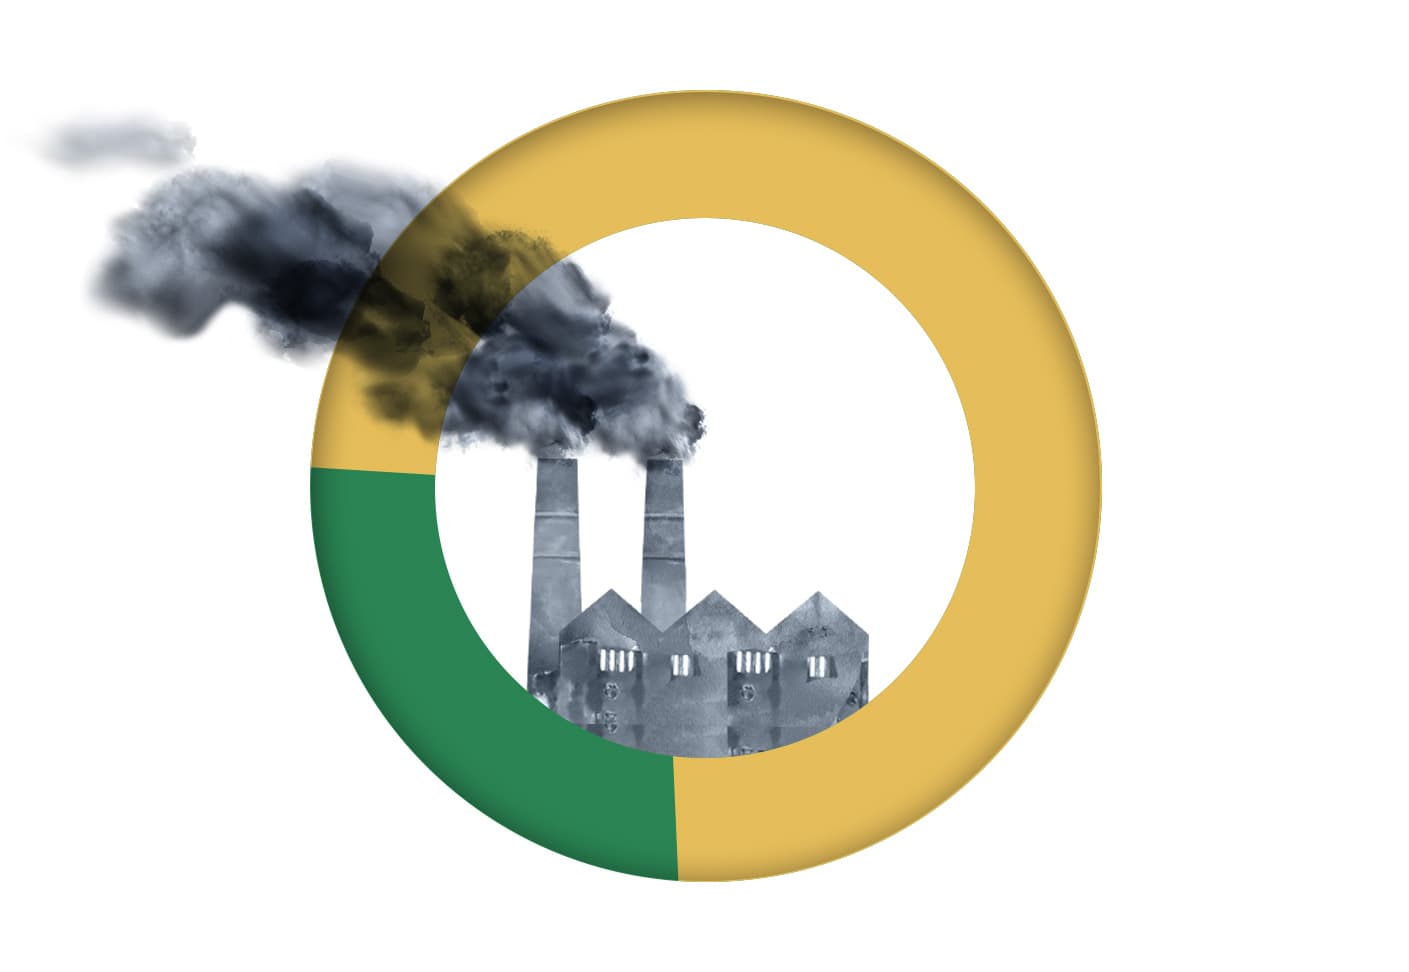 Grafik mit Fabrik und dunklen Wolken zum Thema CO2 Ausstoß und Klimawandel